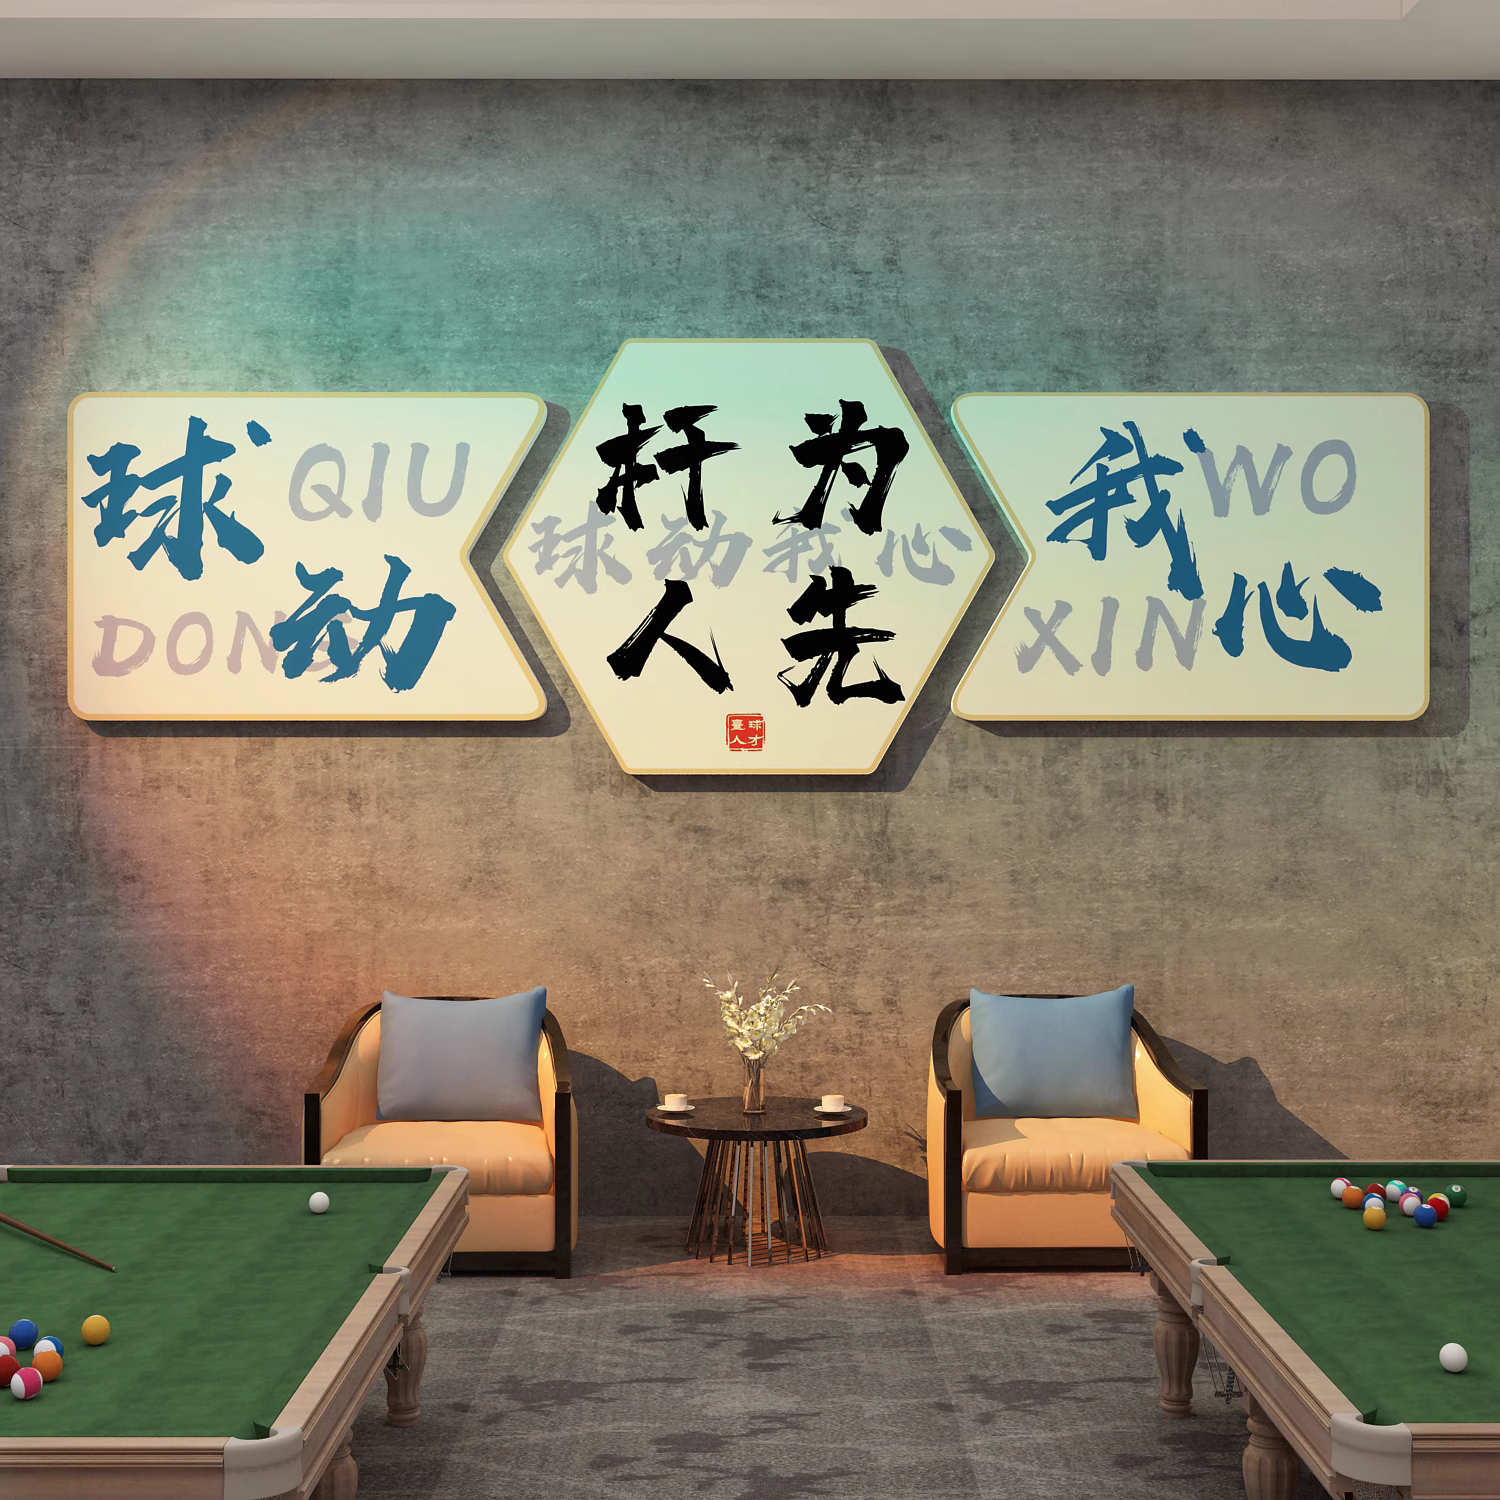 台球室厅墙面装修饰品桌球俱乐部广告海报贴纸画文化背景壁画设计